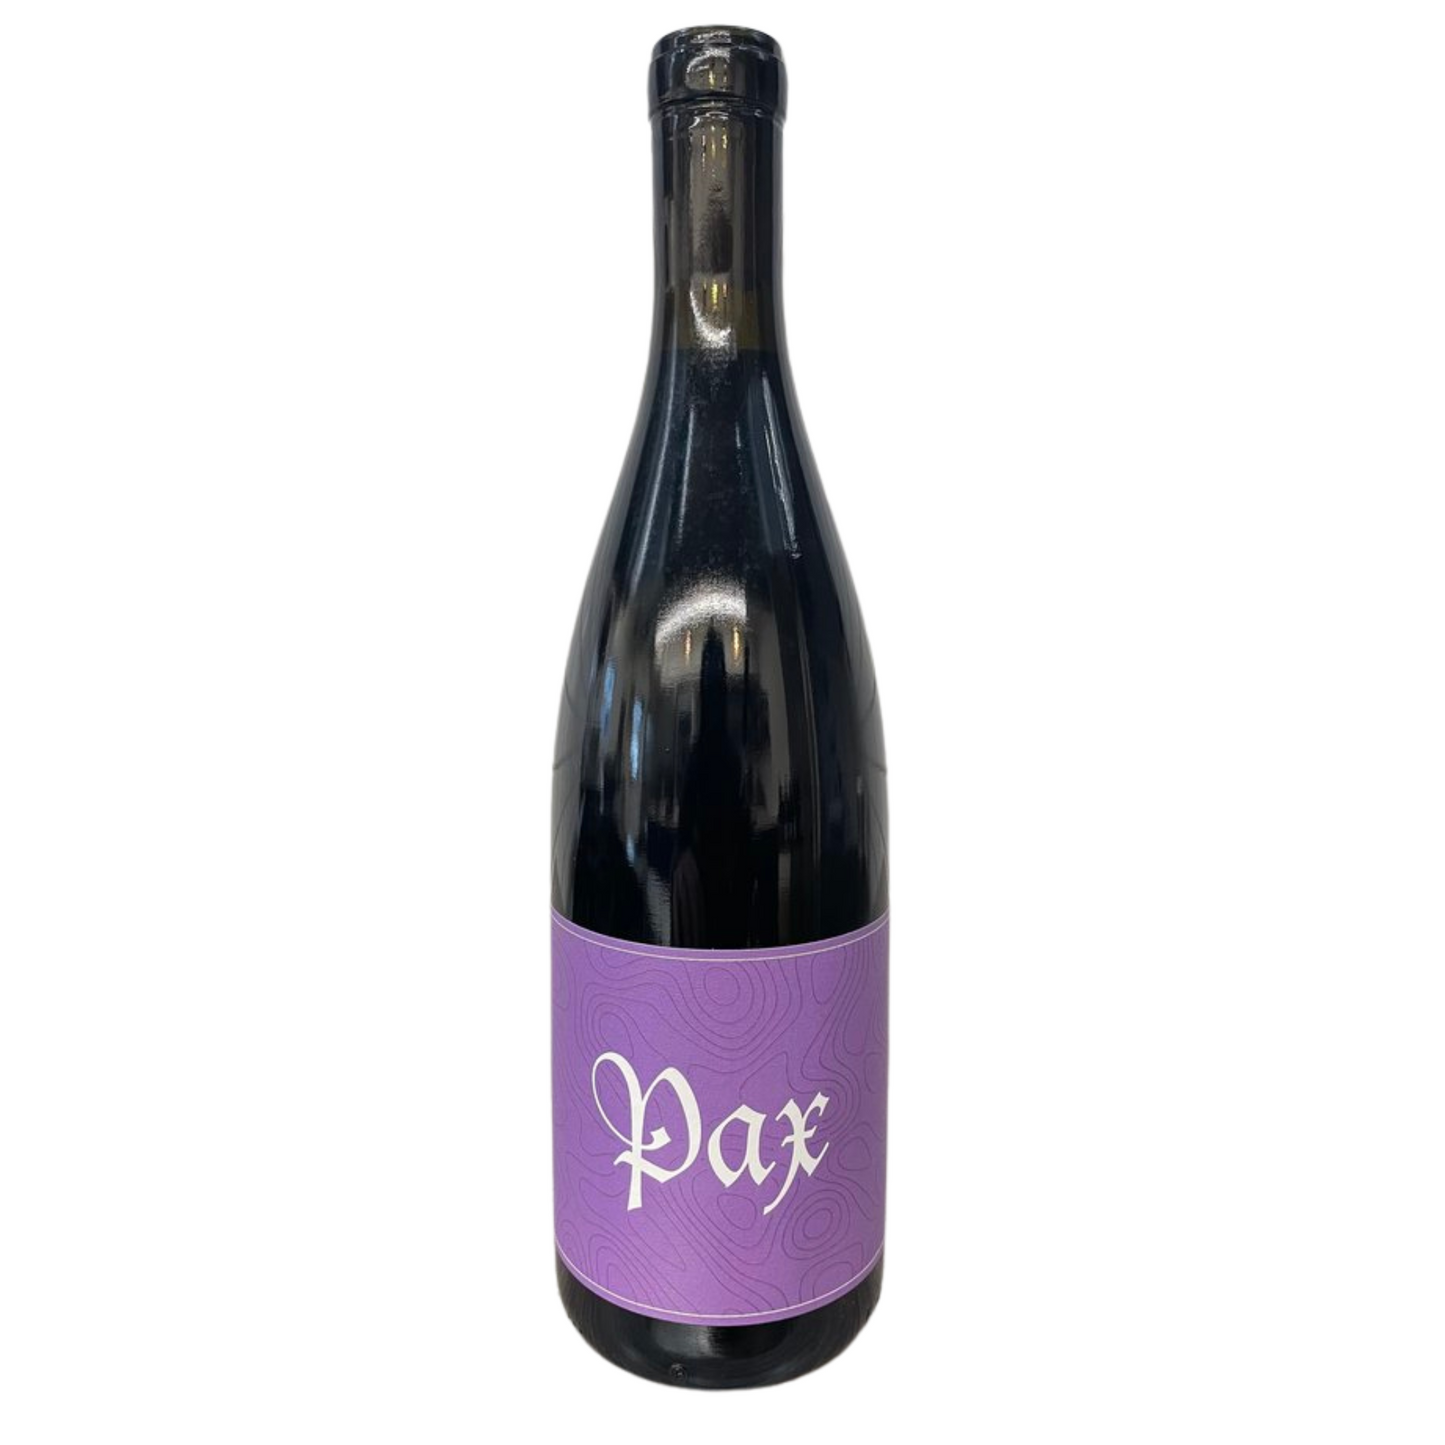 Pax Grenache, Alder Springs Vineyard 2021 (750 ml)